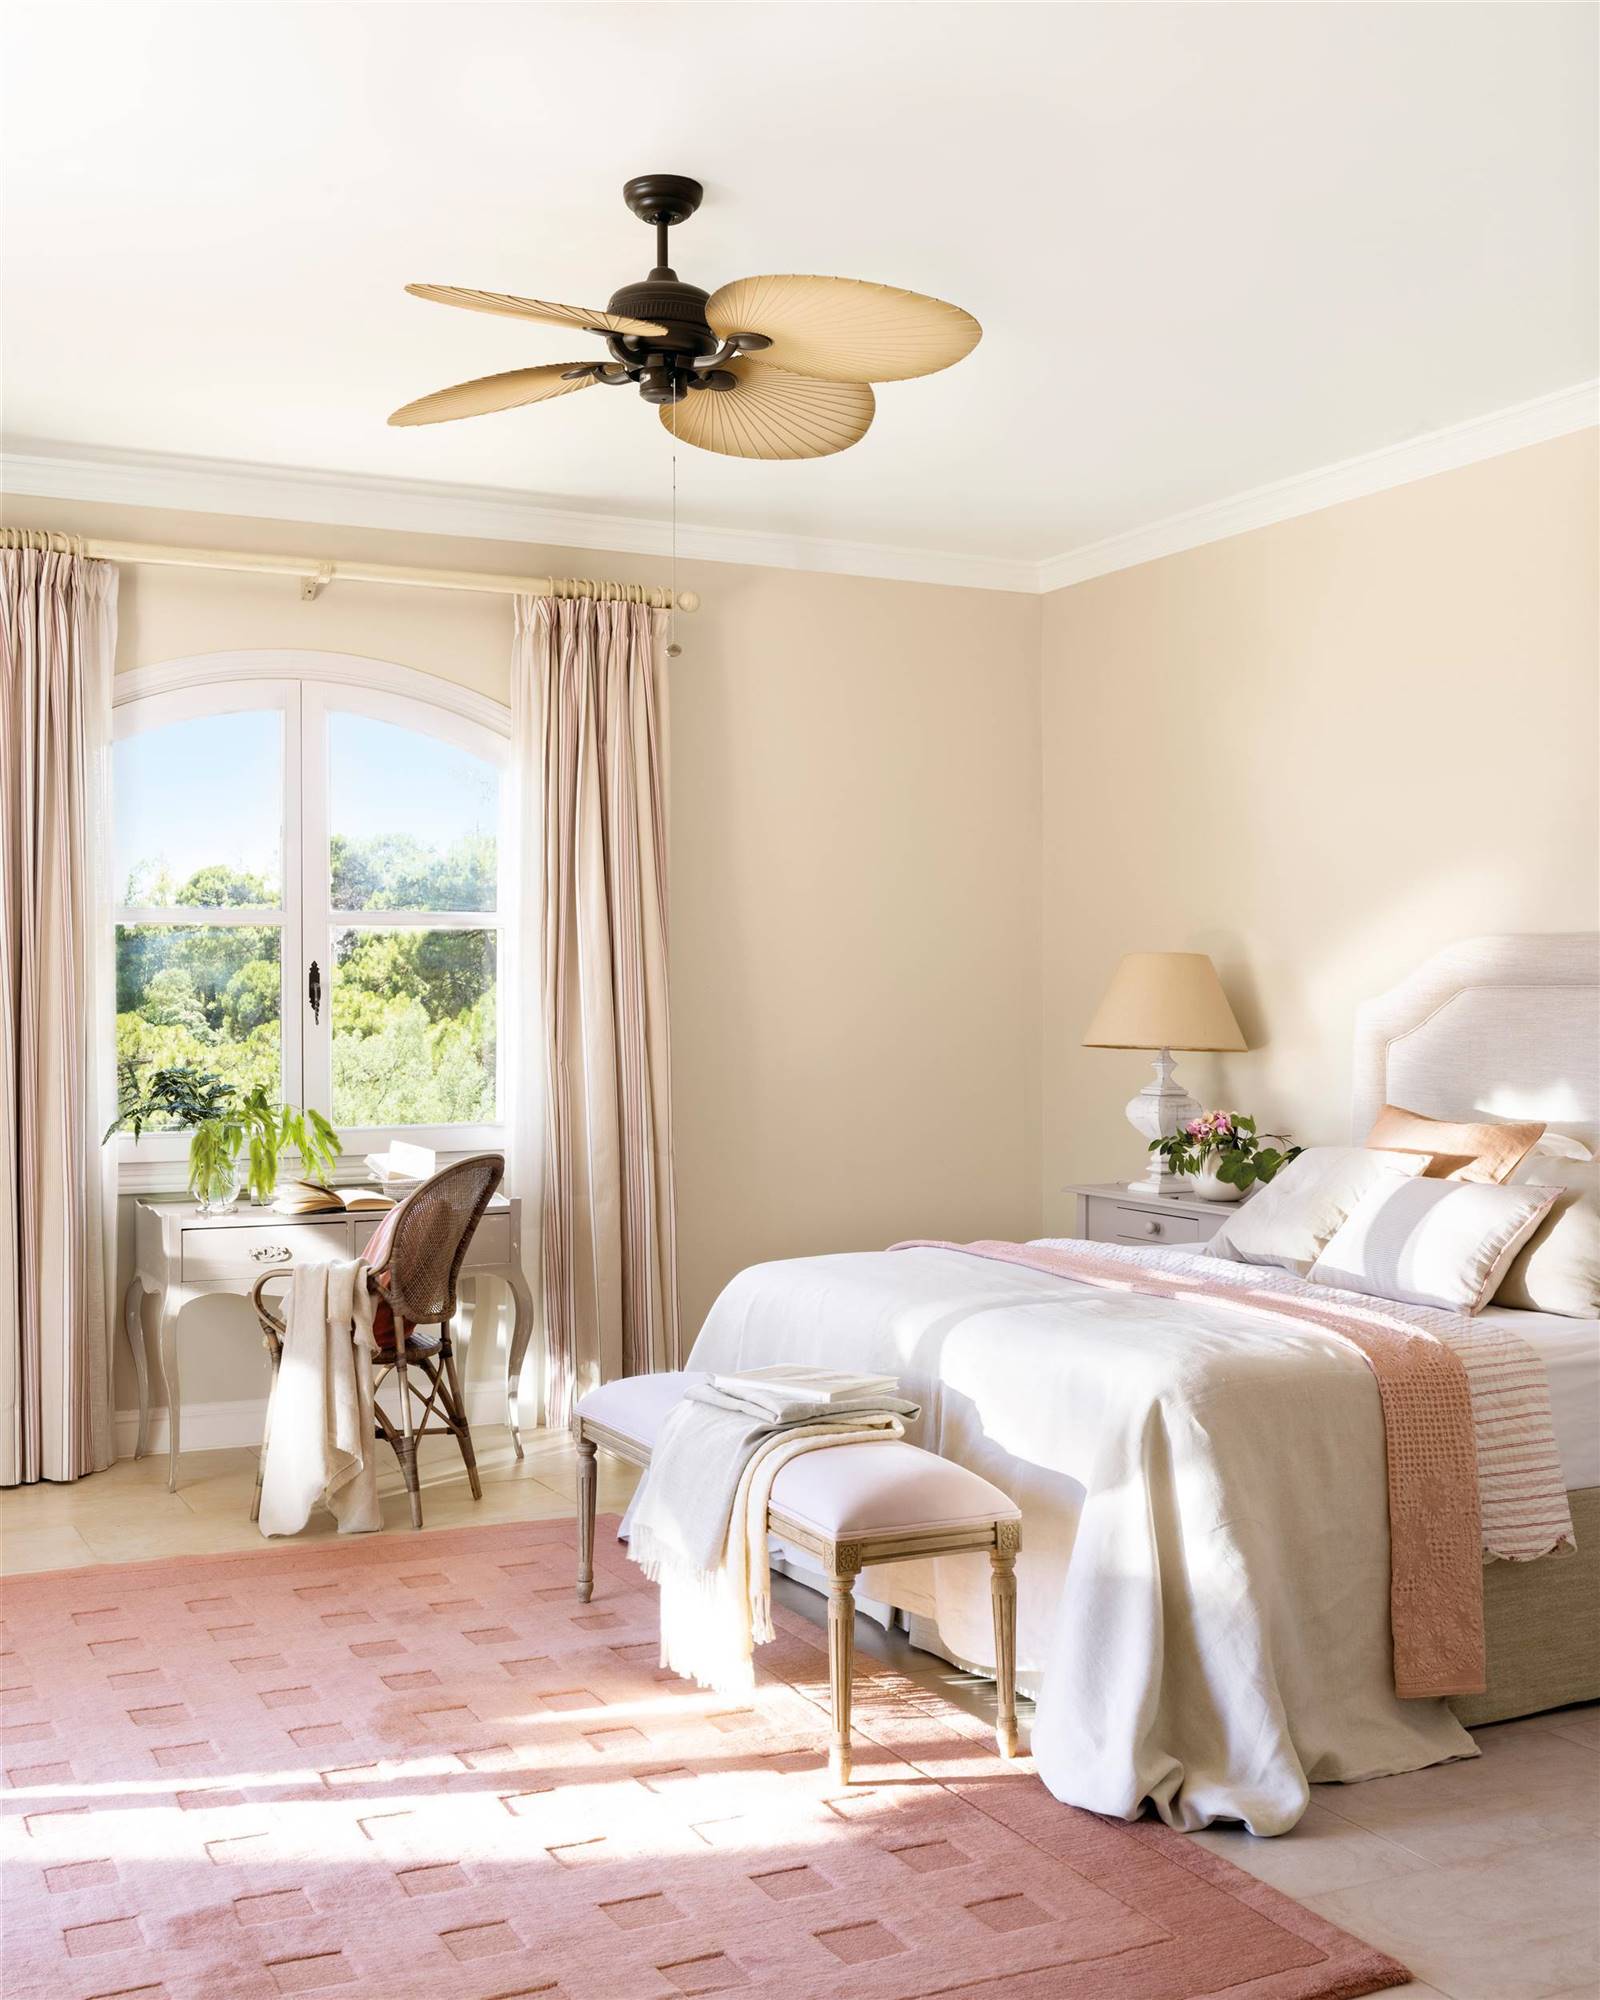 Dormitorio pintado en beige con alfombra de pelo en rosa empolvado.